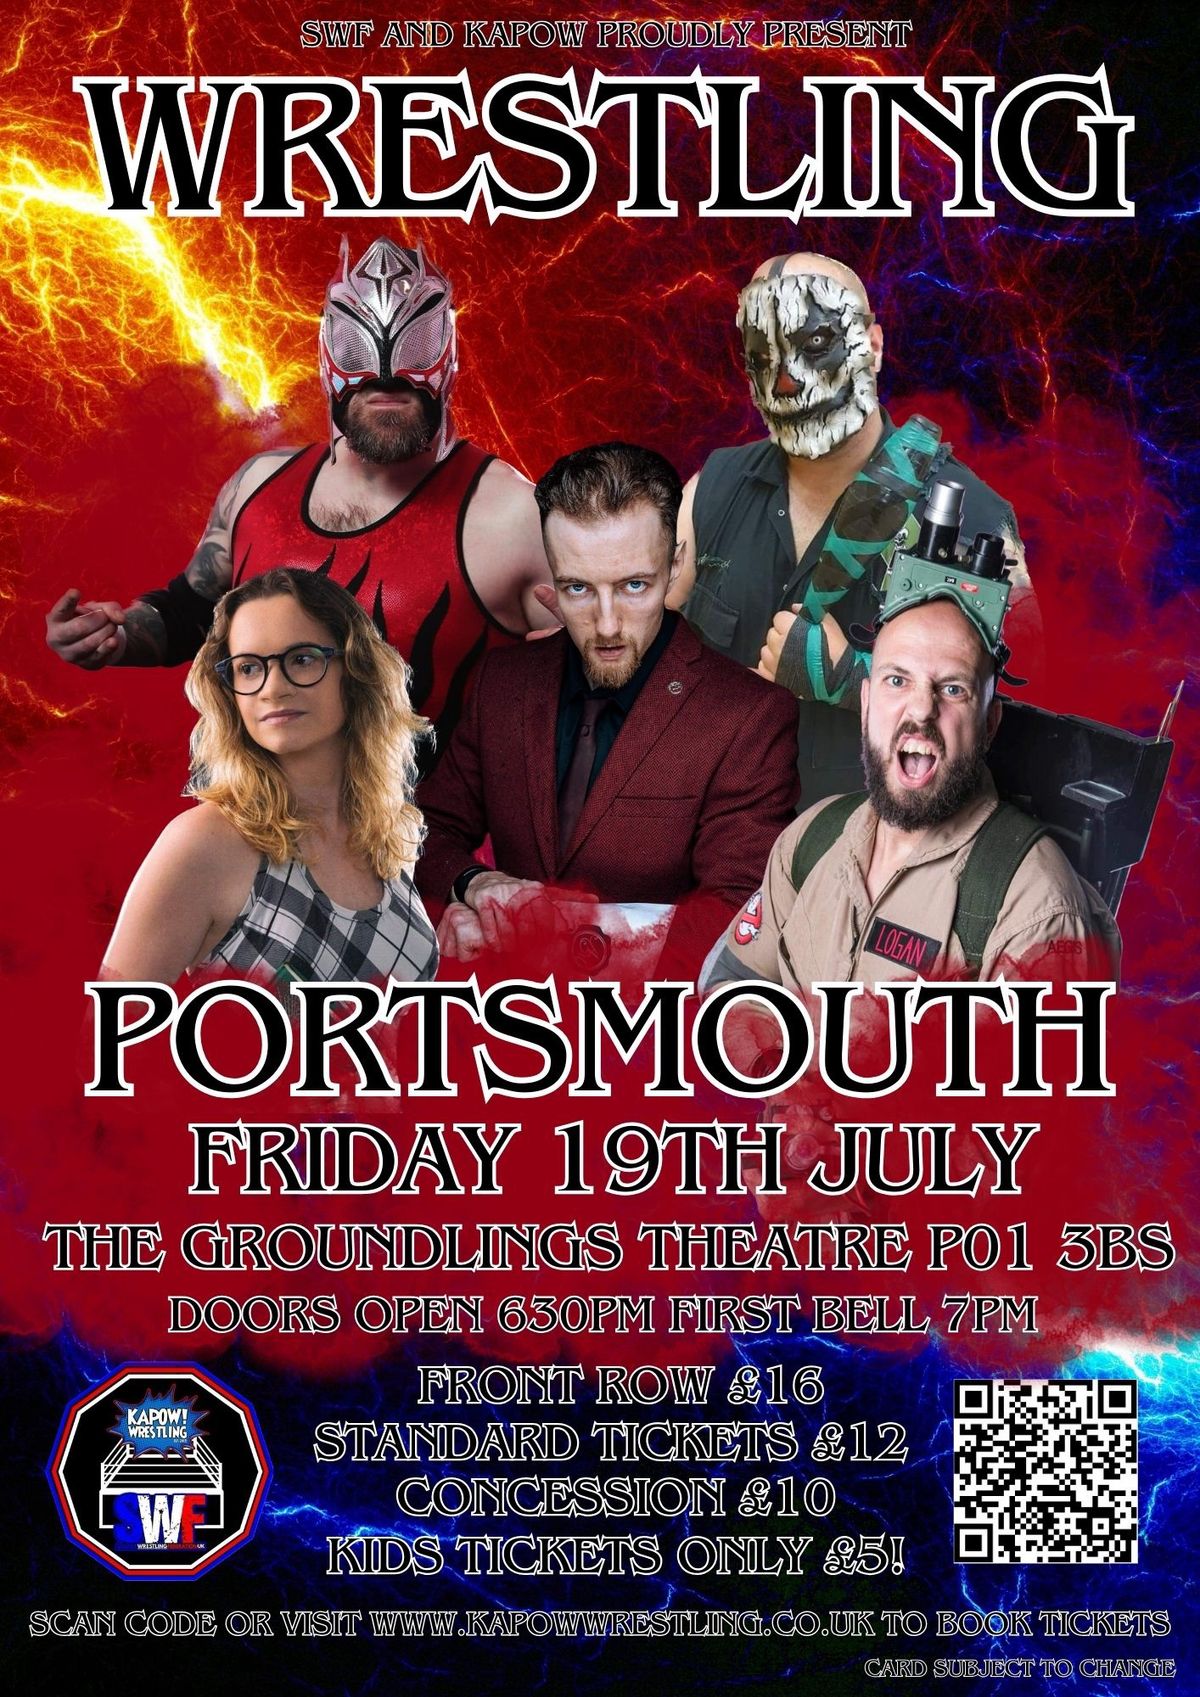 Live Wrestling back in Portsmouth 